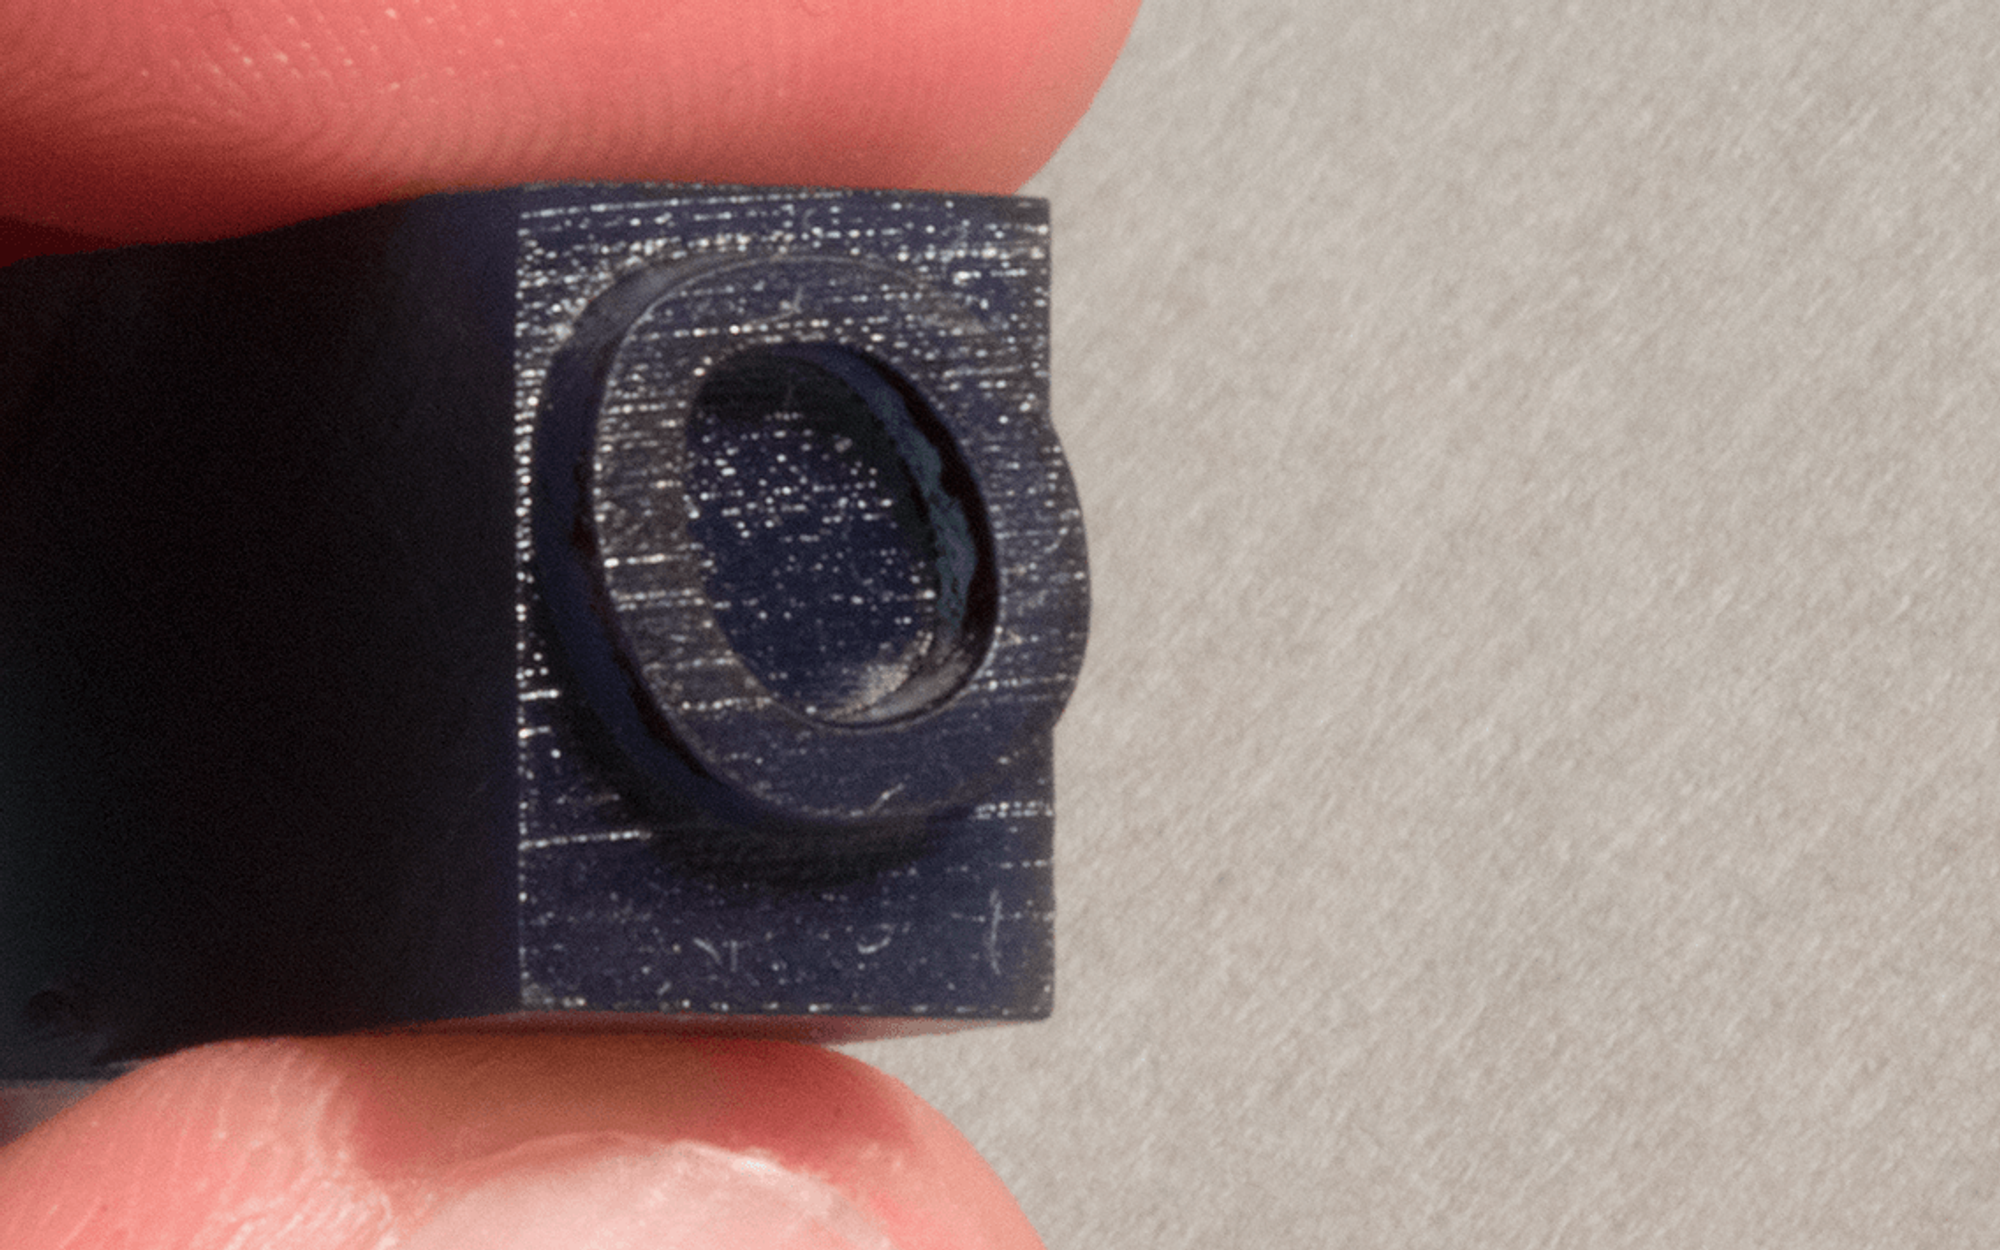 Closeup of the 3D printed sort